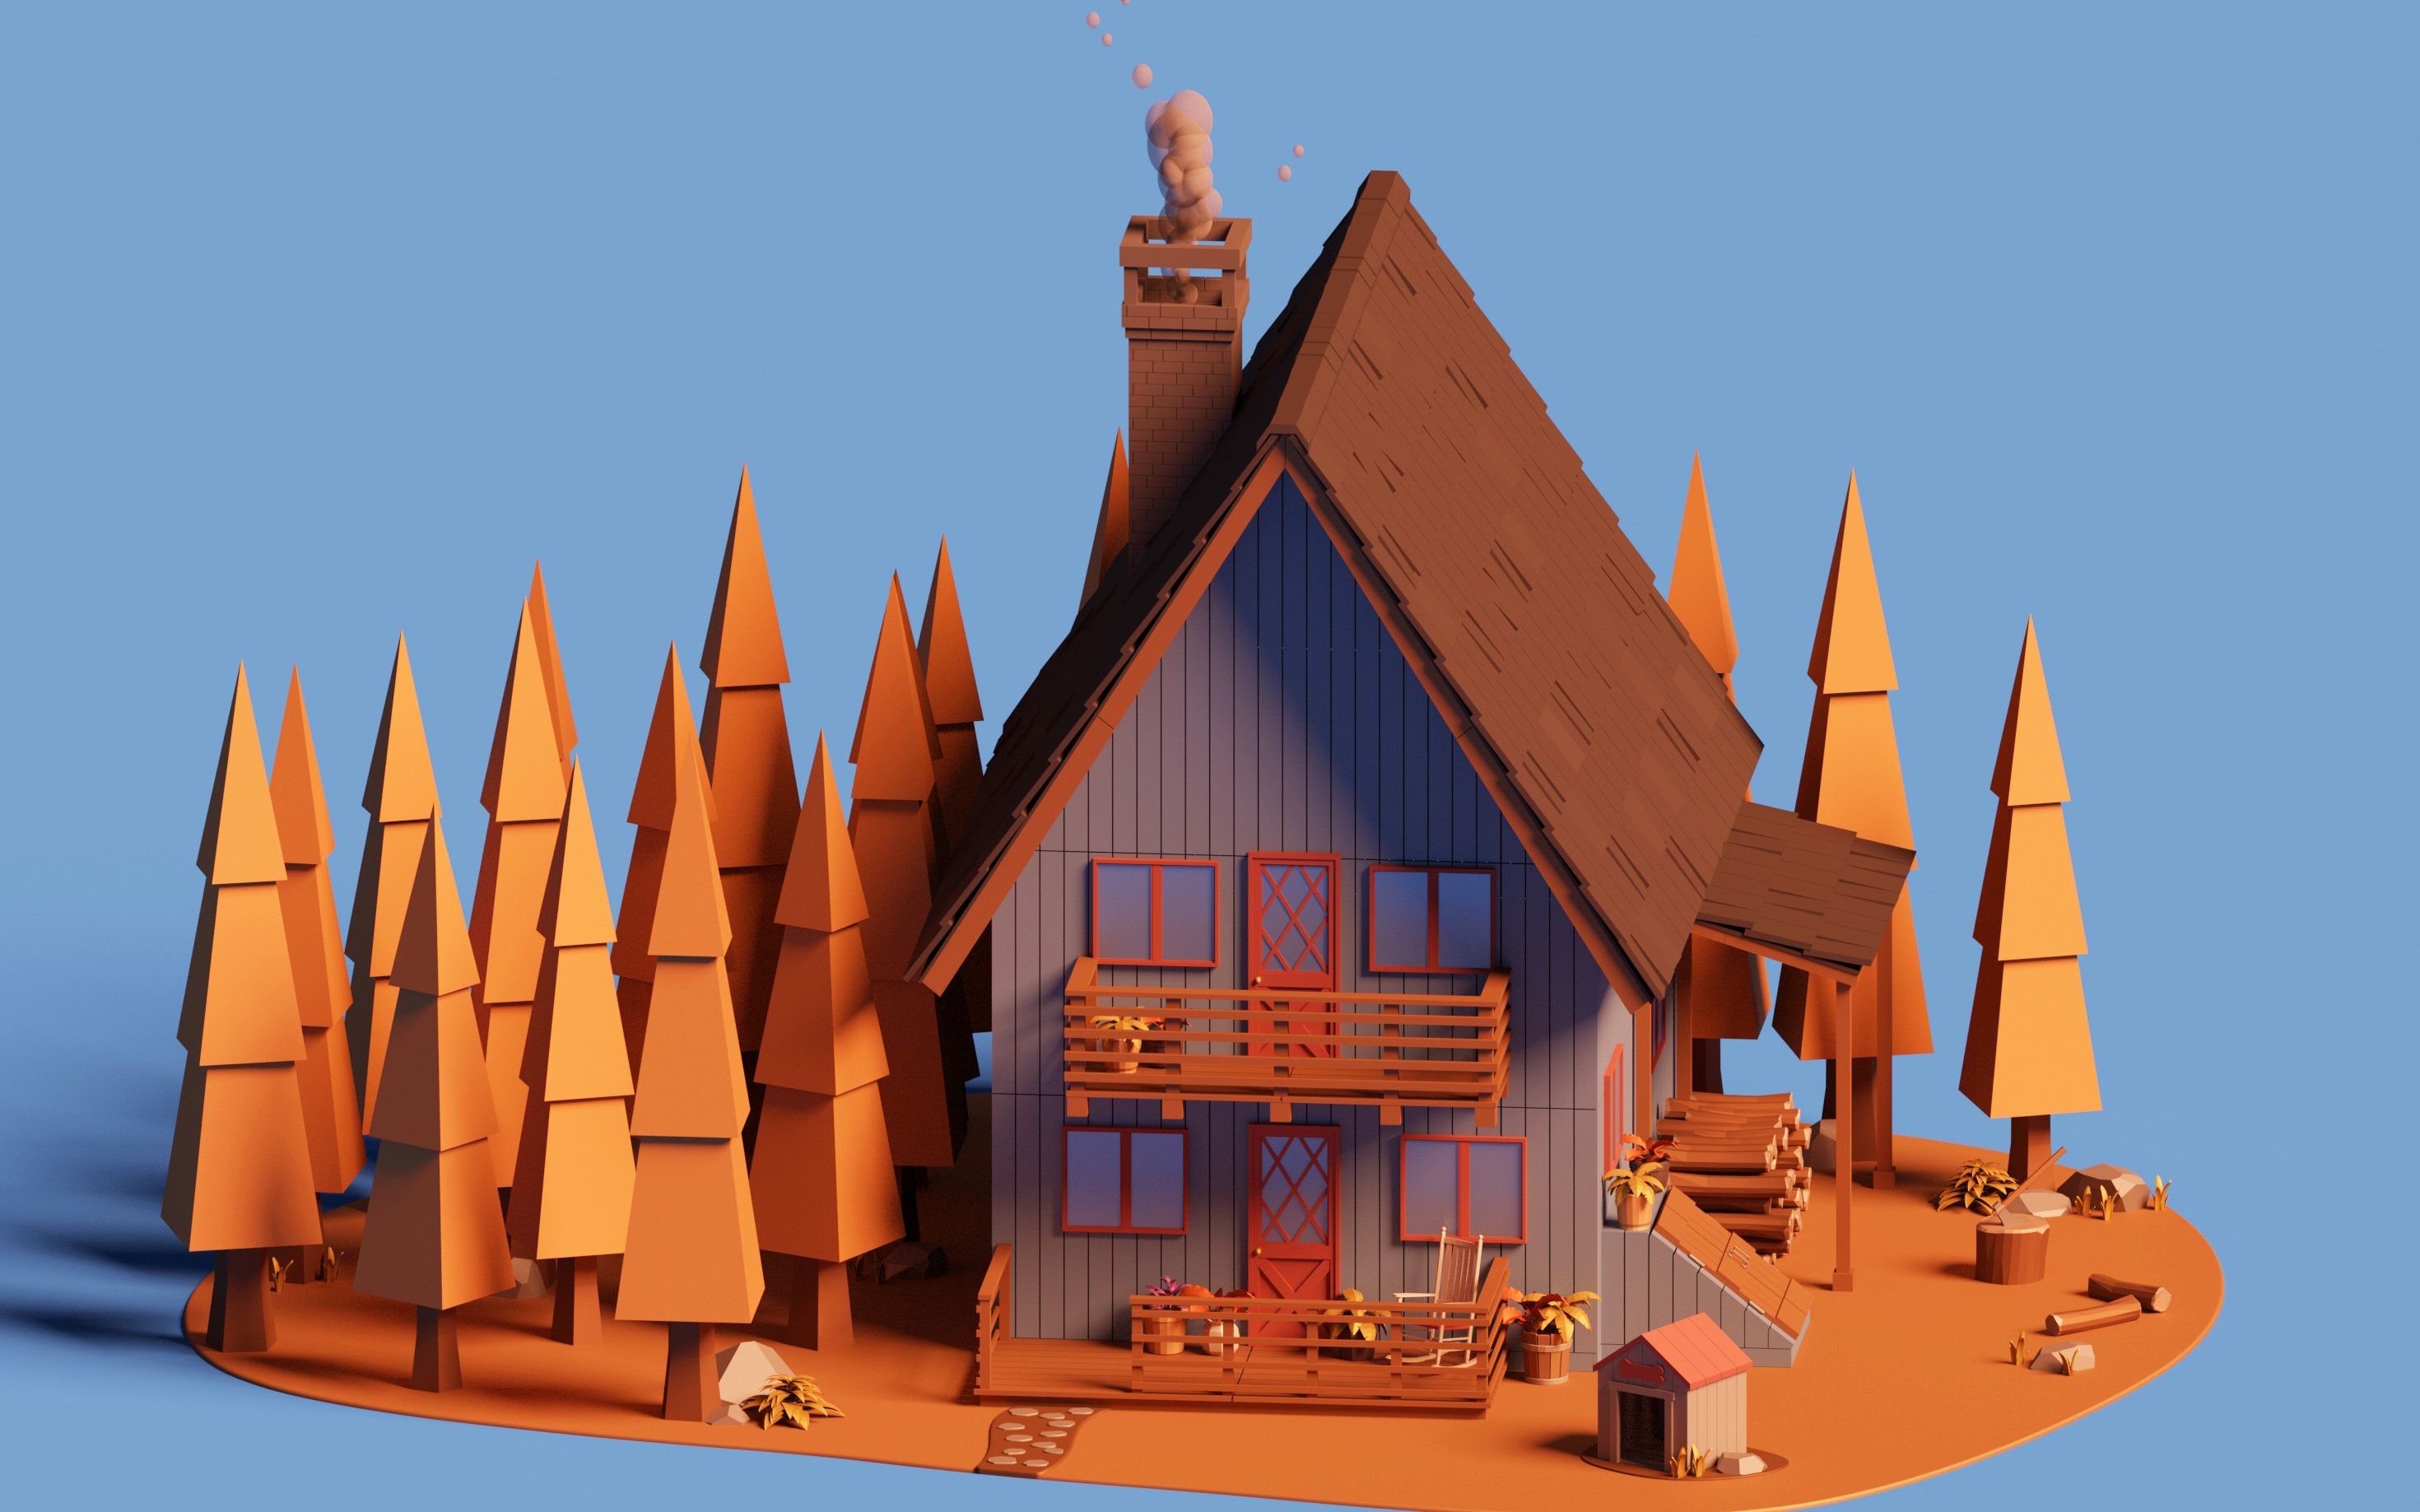 3dmax场景建模零基础学习欧美风格房子场景模型建模